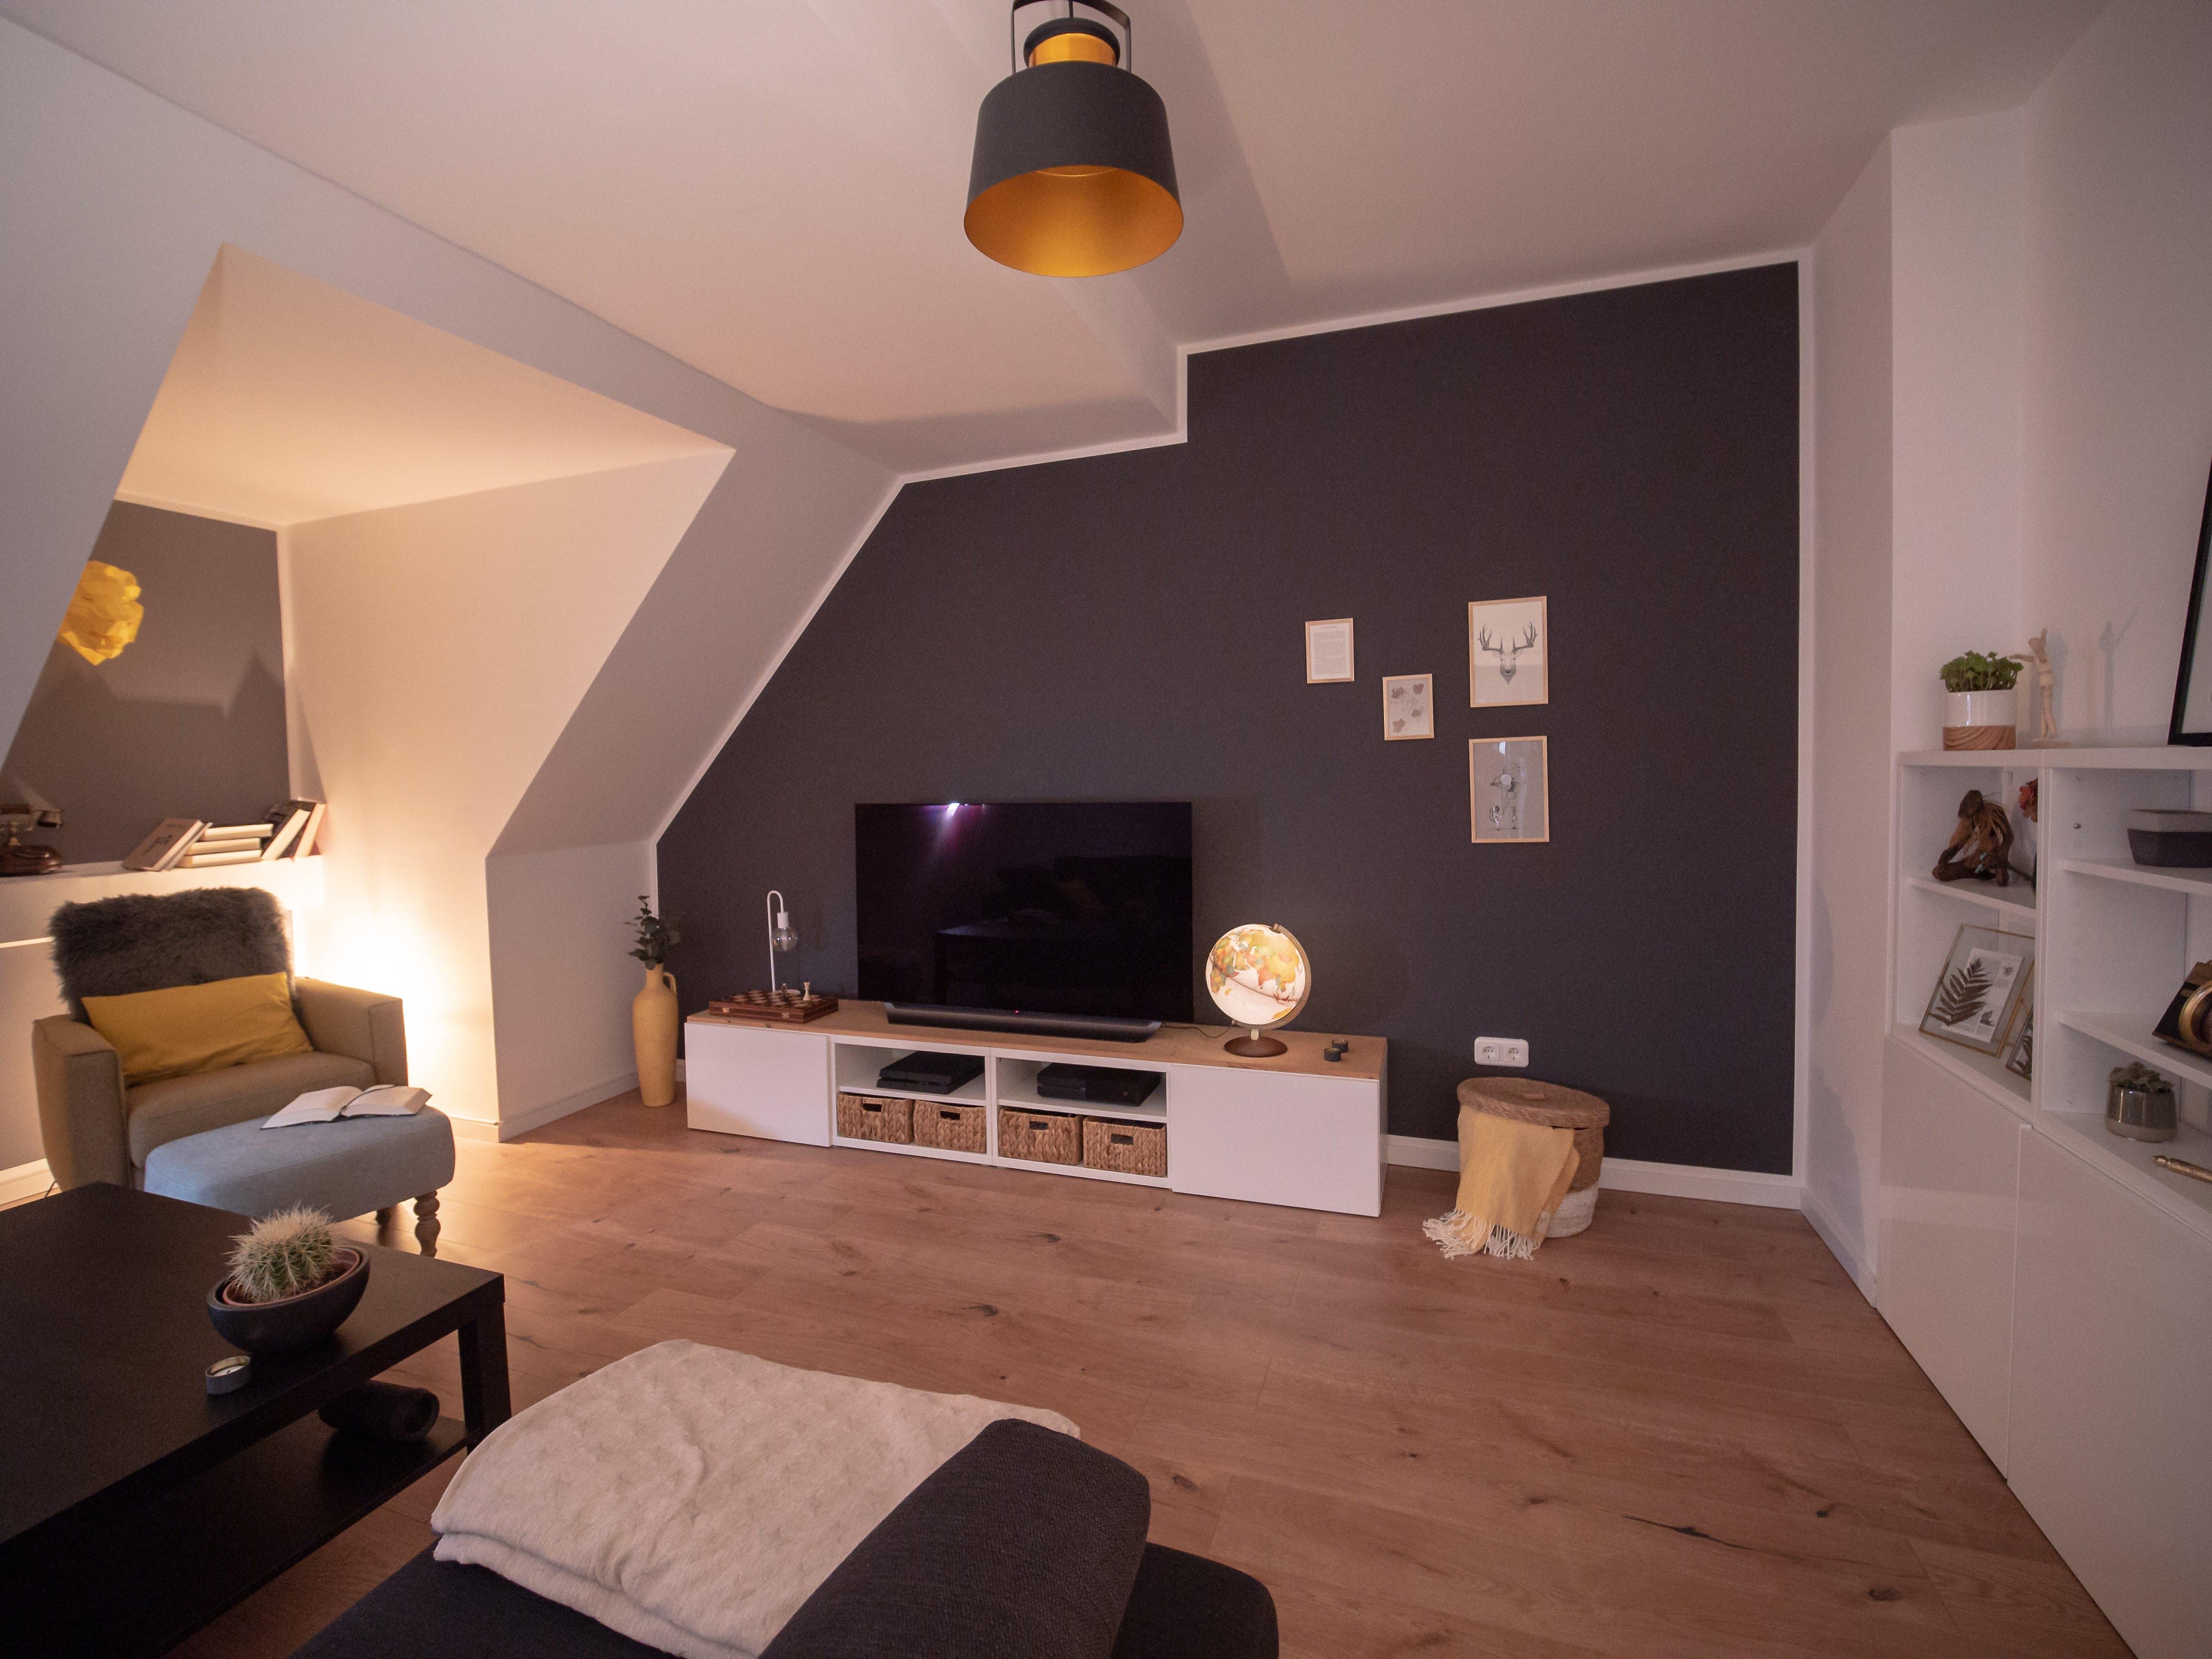 Als nächstes muss ein neuer Couchtisch her! #wohnzimmergestaltung #livingchallenge #couchmagazin